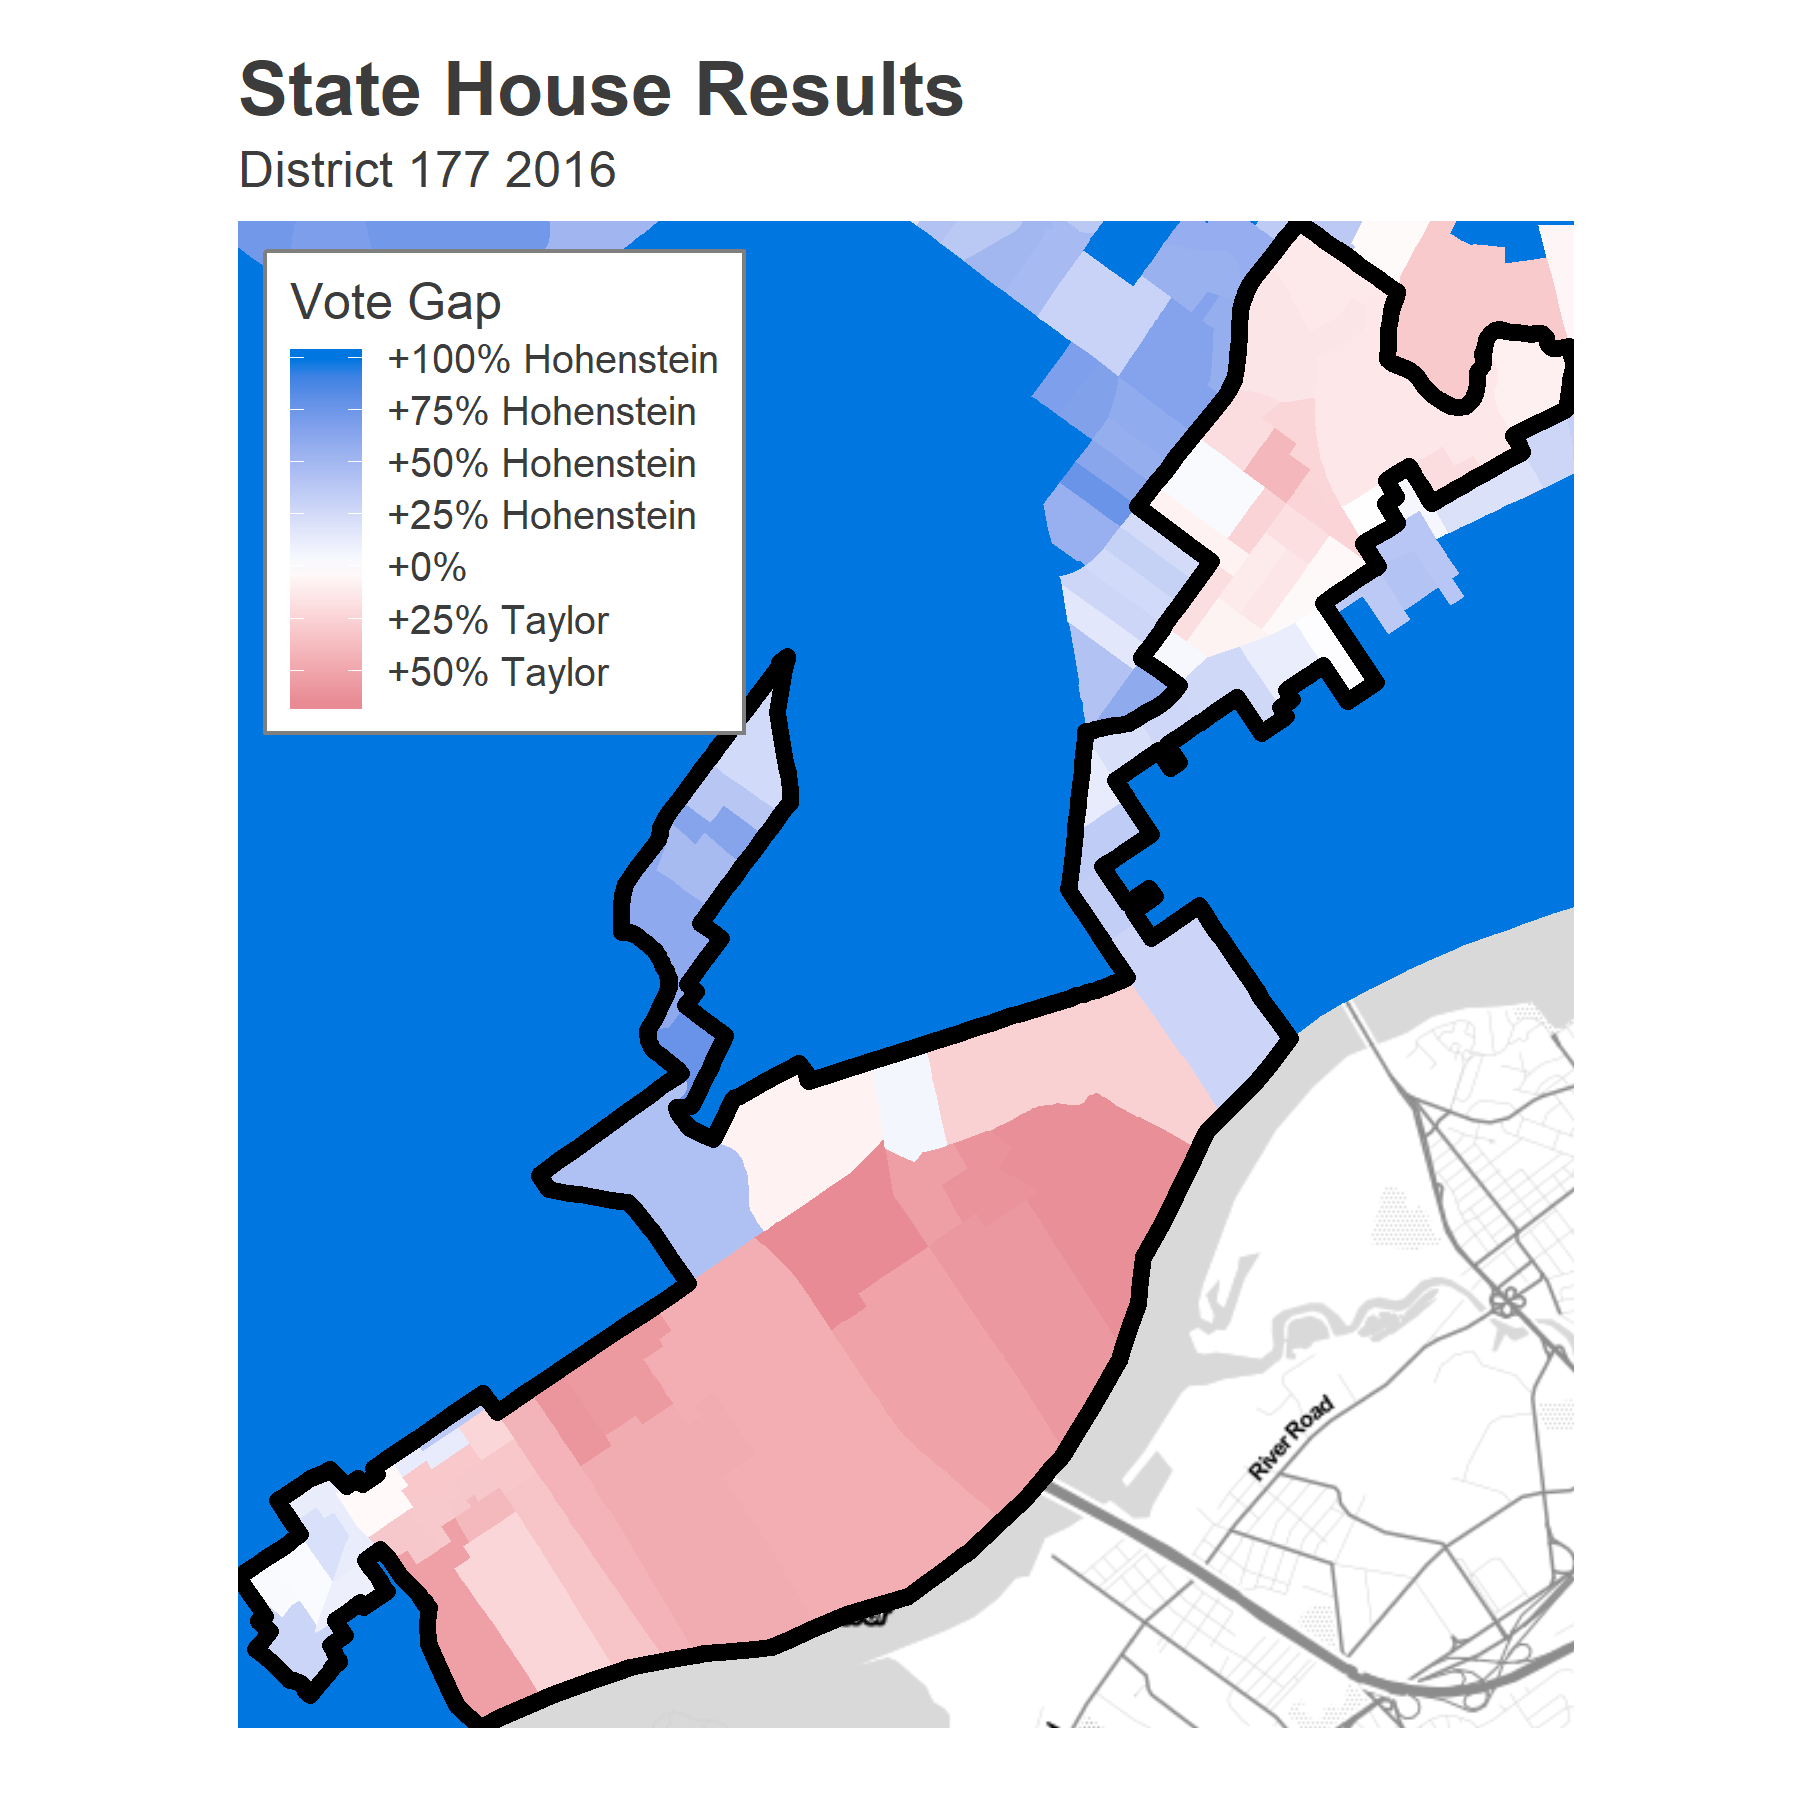 Pennsylvania House District 177 Sixty Six Wards